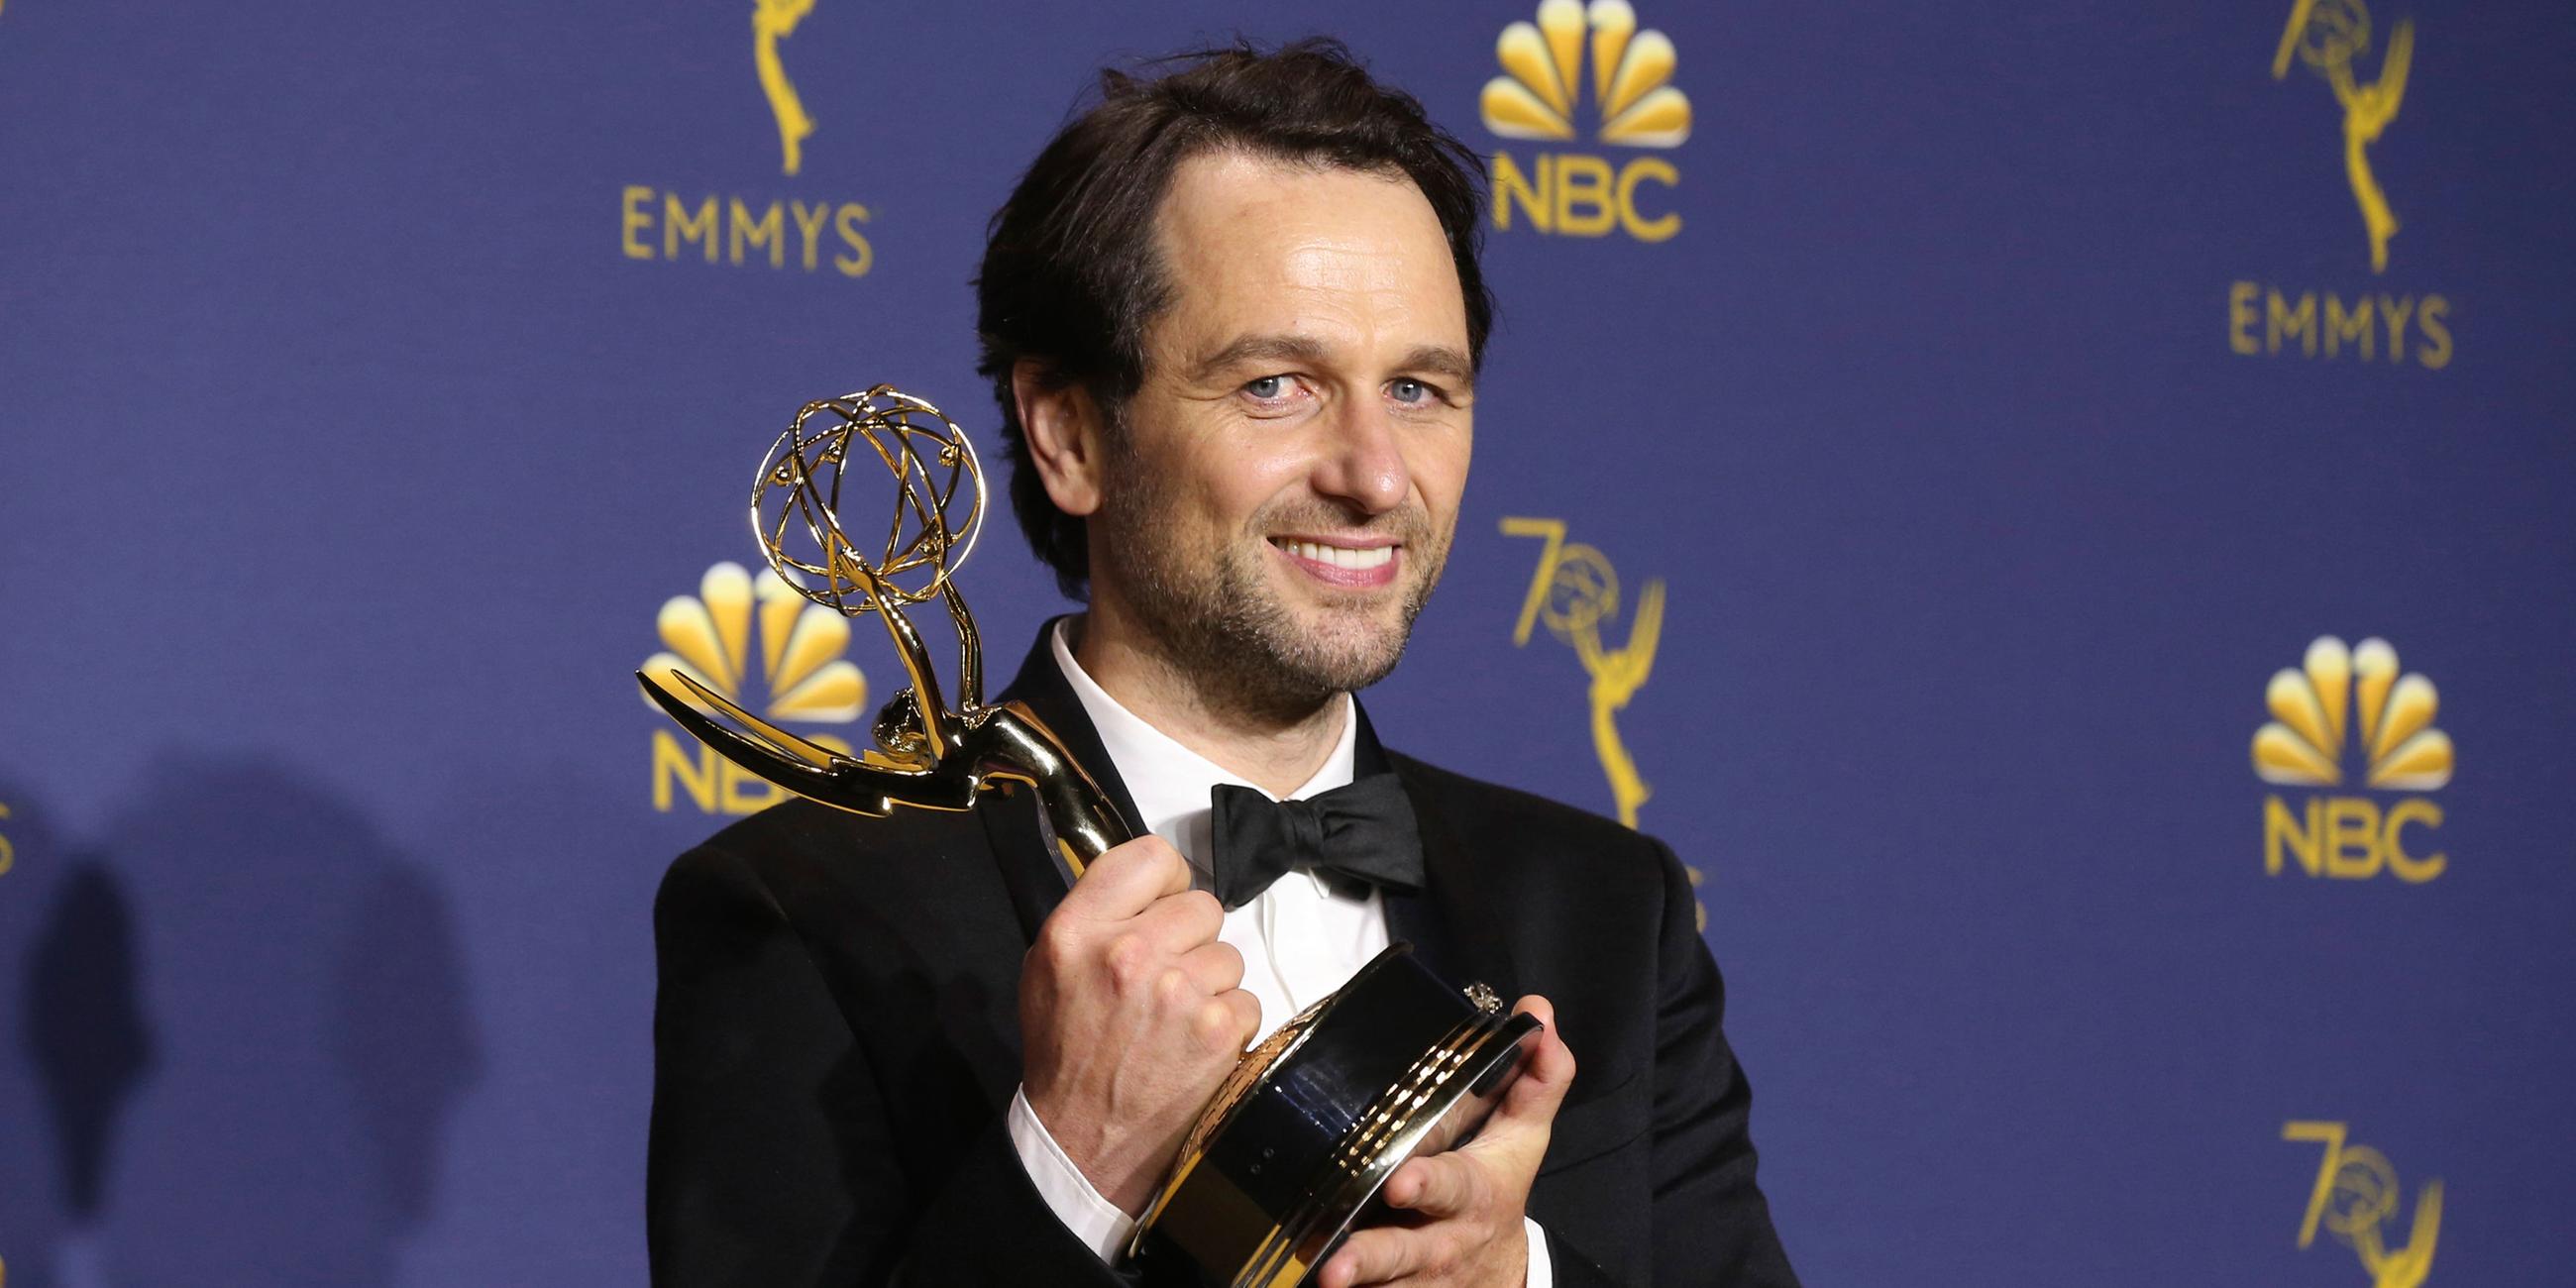 Emmy Awards: Bester Hauptdarsteller in einer Dramaserie - Matthew Rhys für "The Americans"